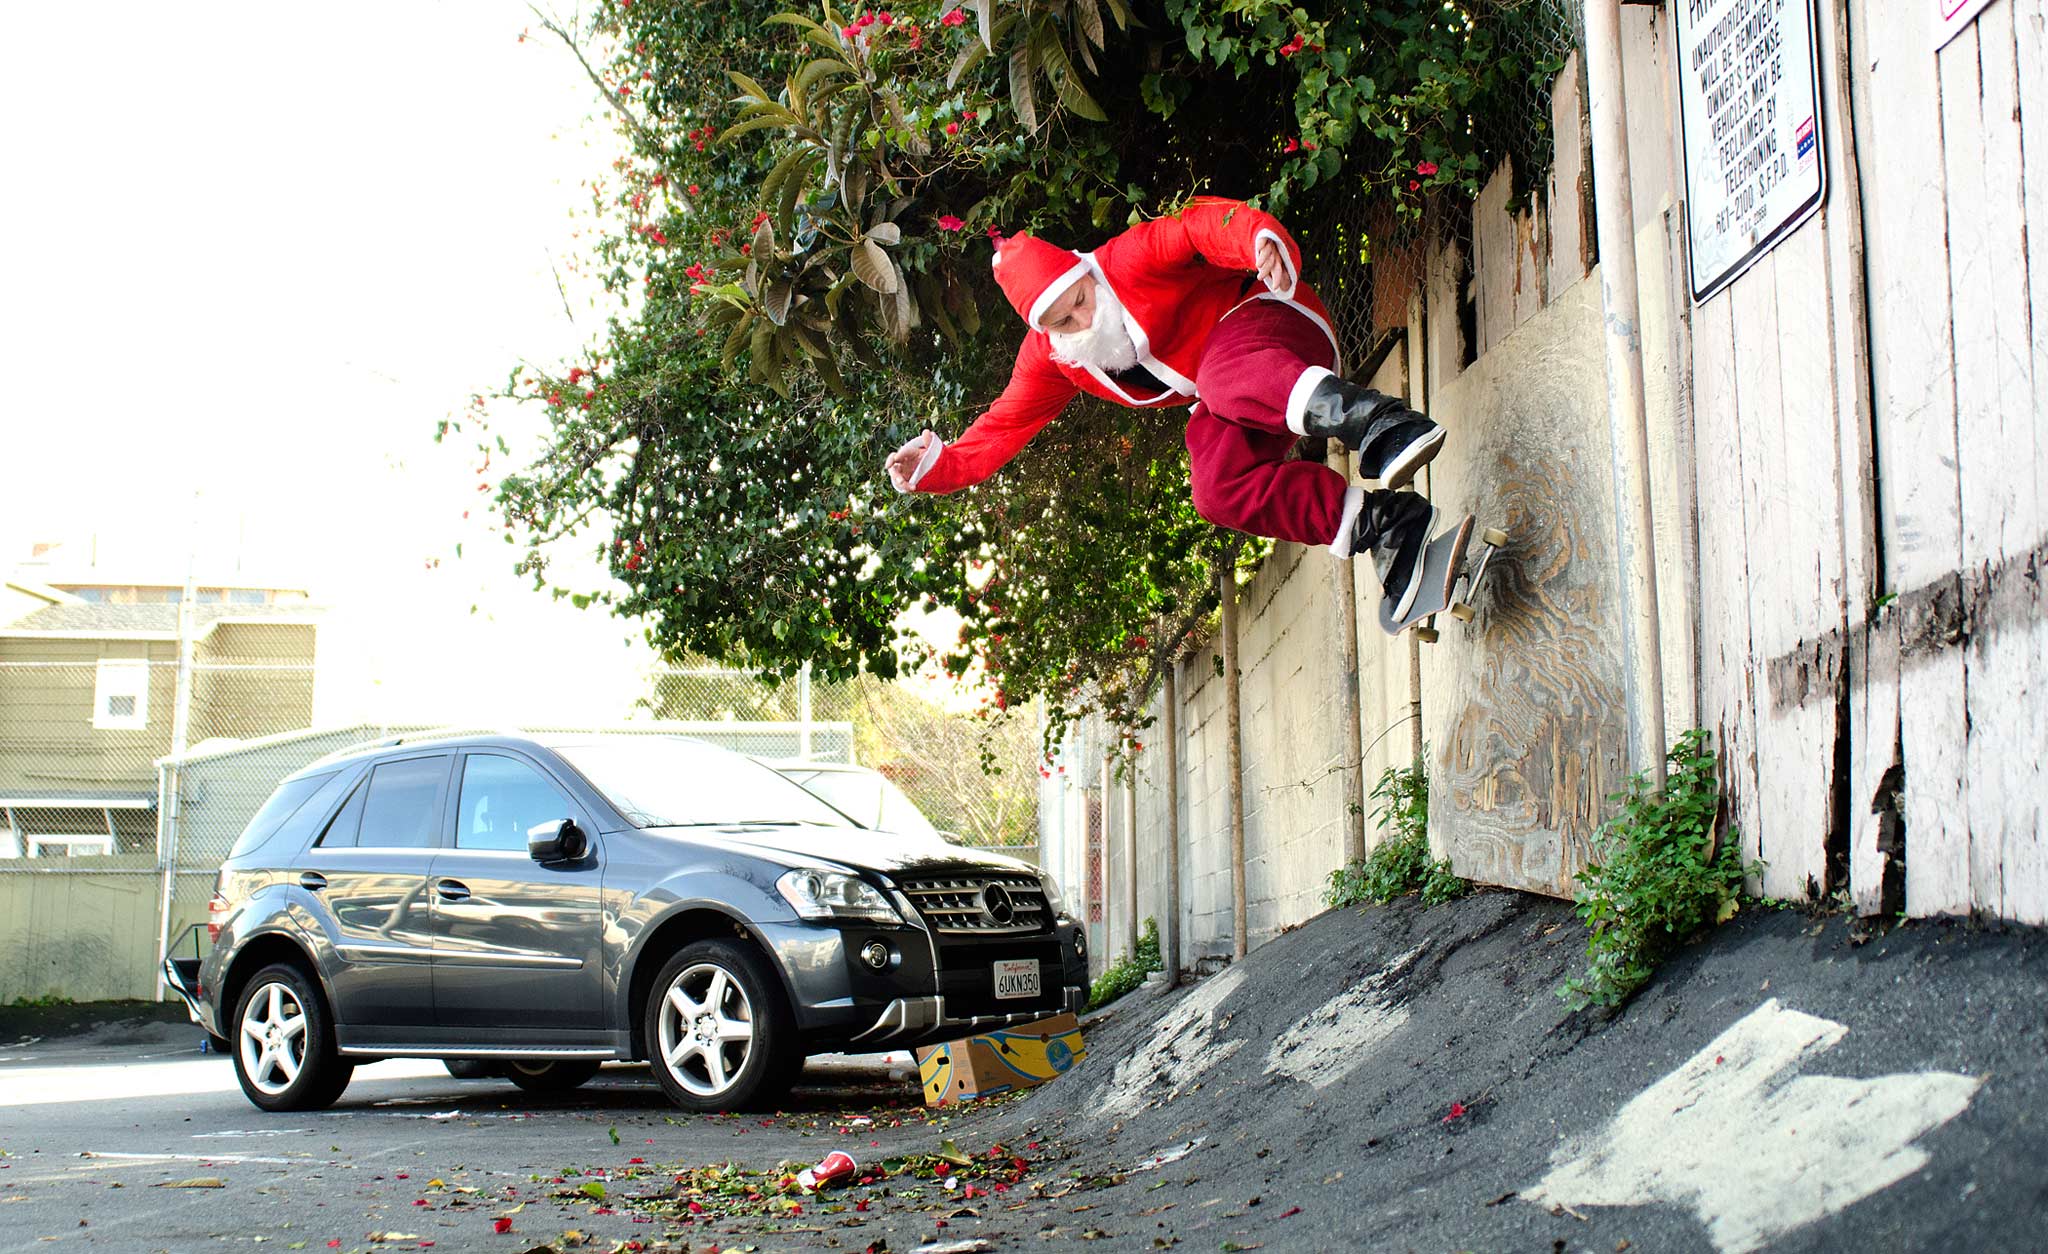 skateboard, Skateboarding, Skate, Christmas, Santa Wallpaper